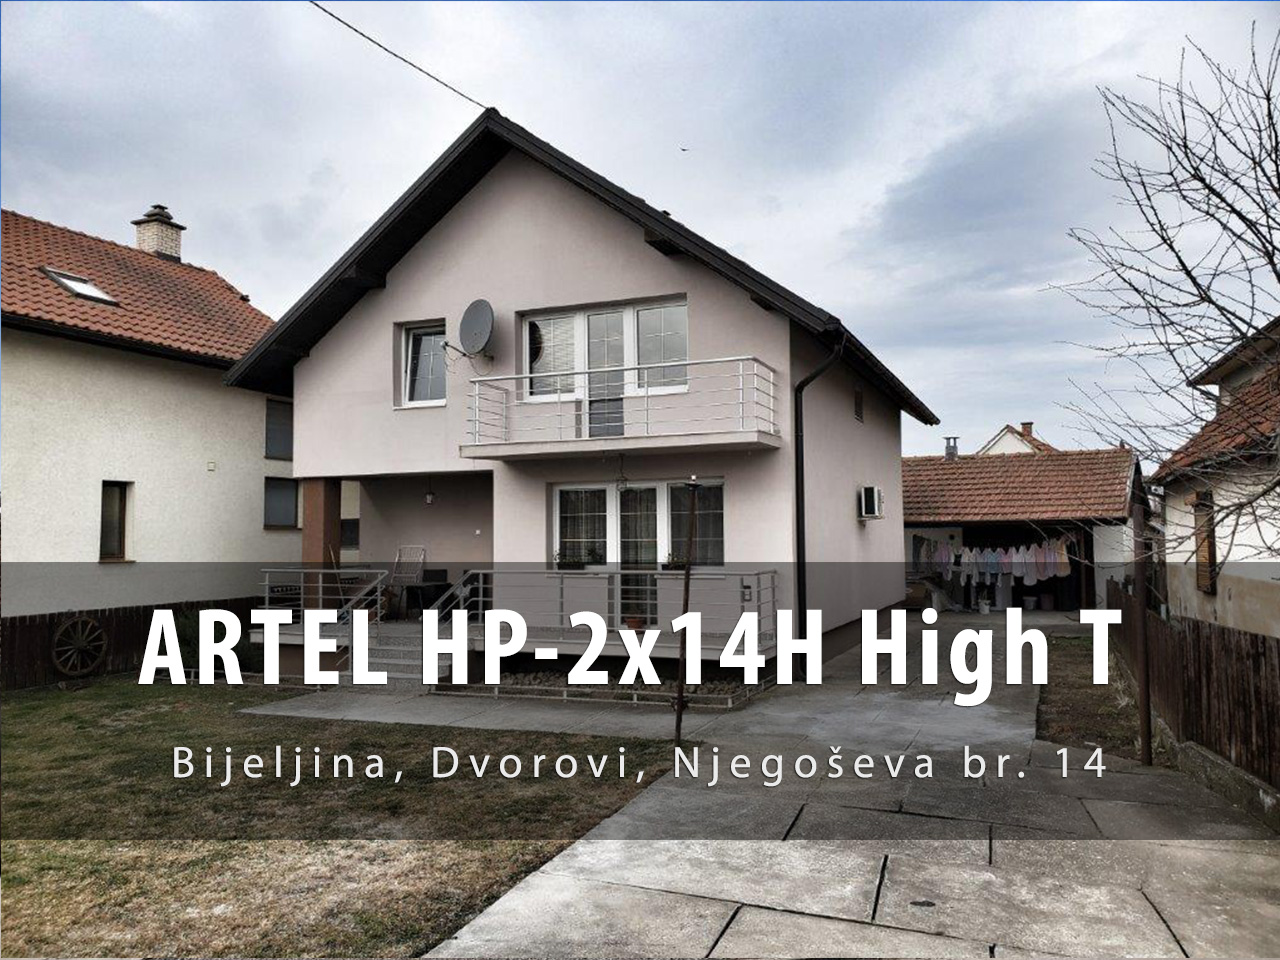 Artel-HP-14H-HT-Bijeljina